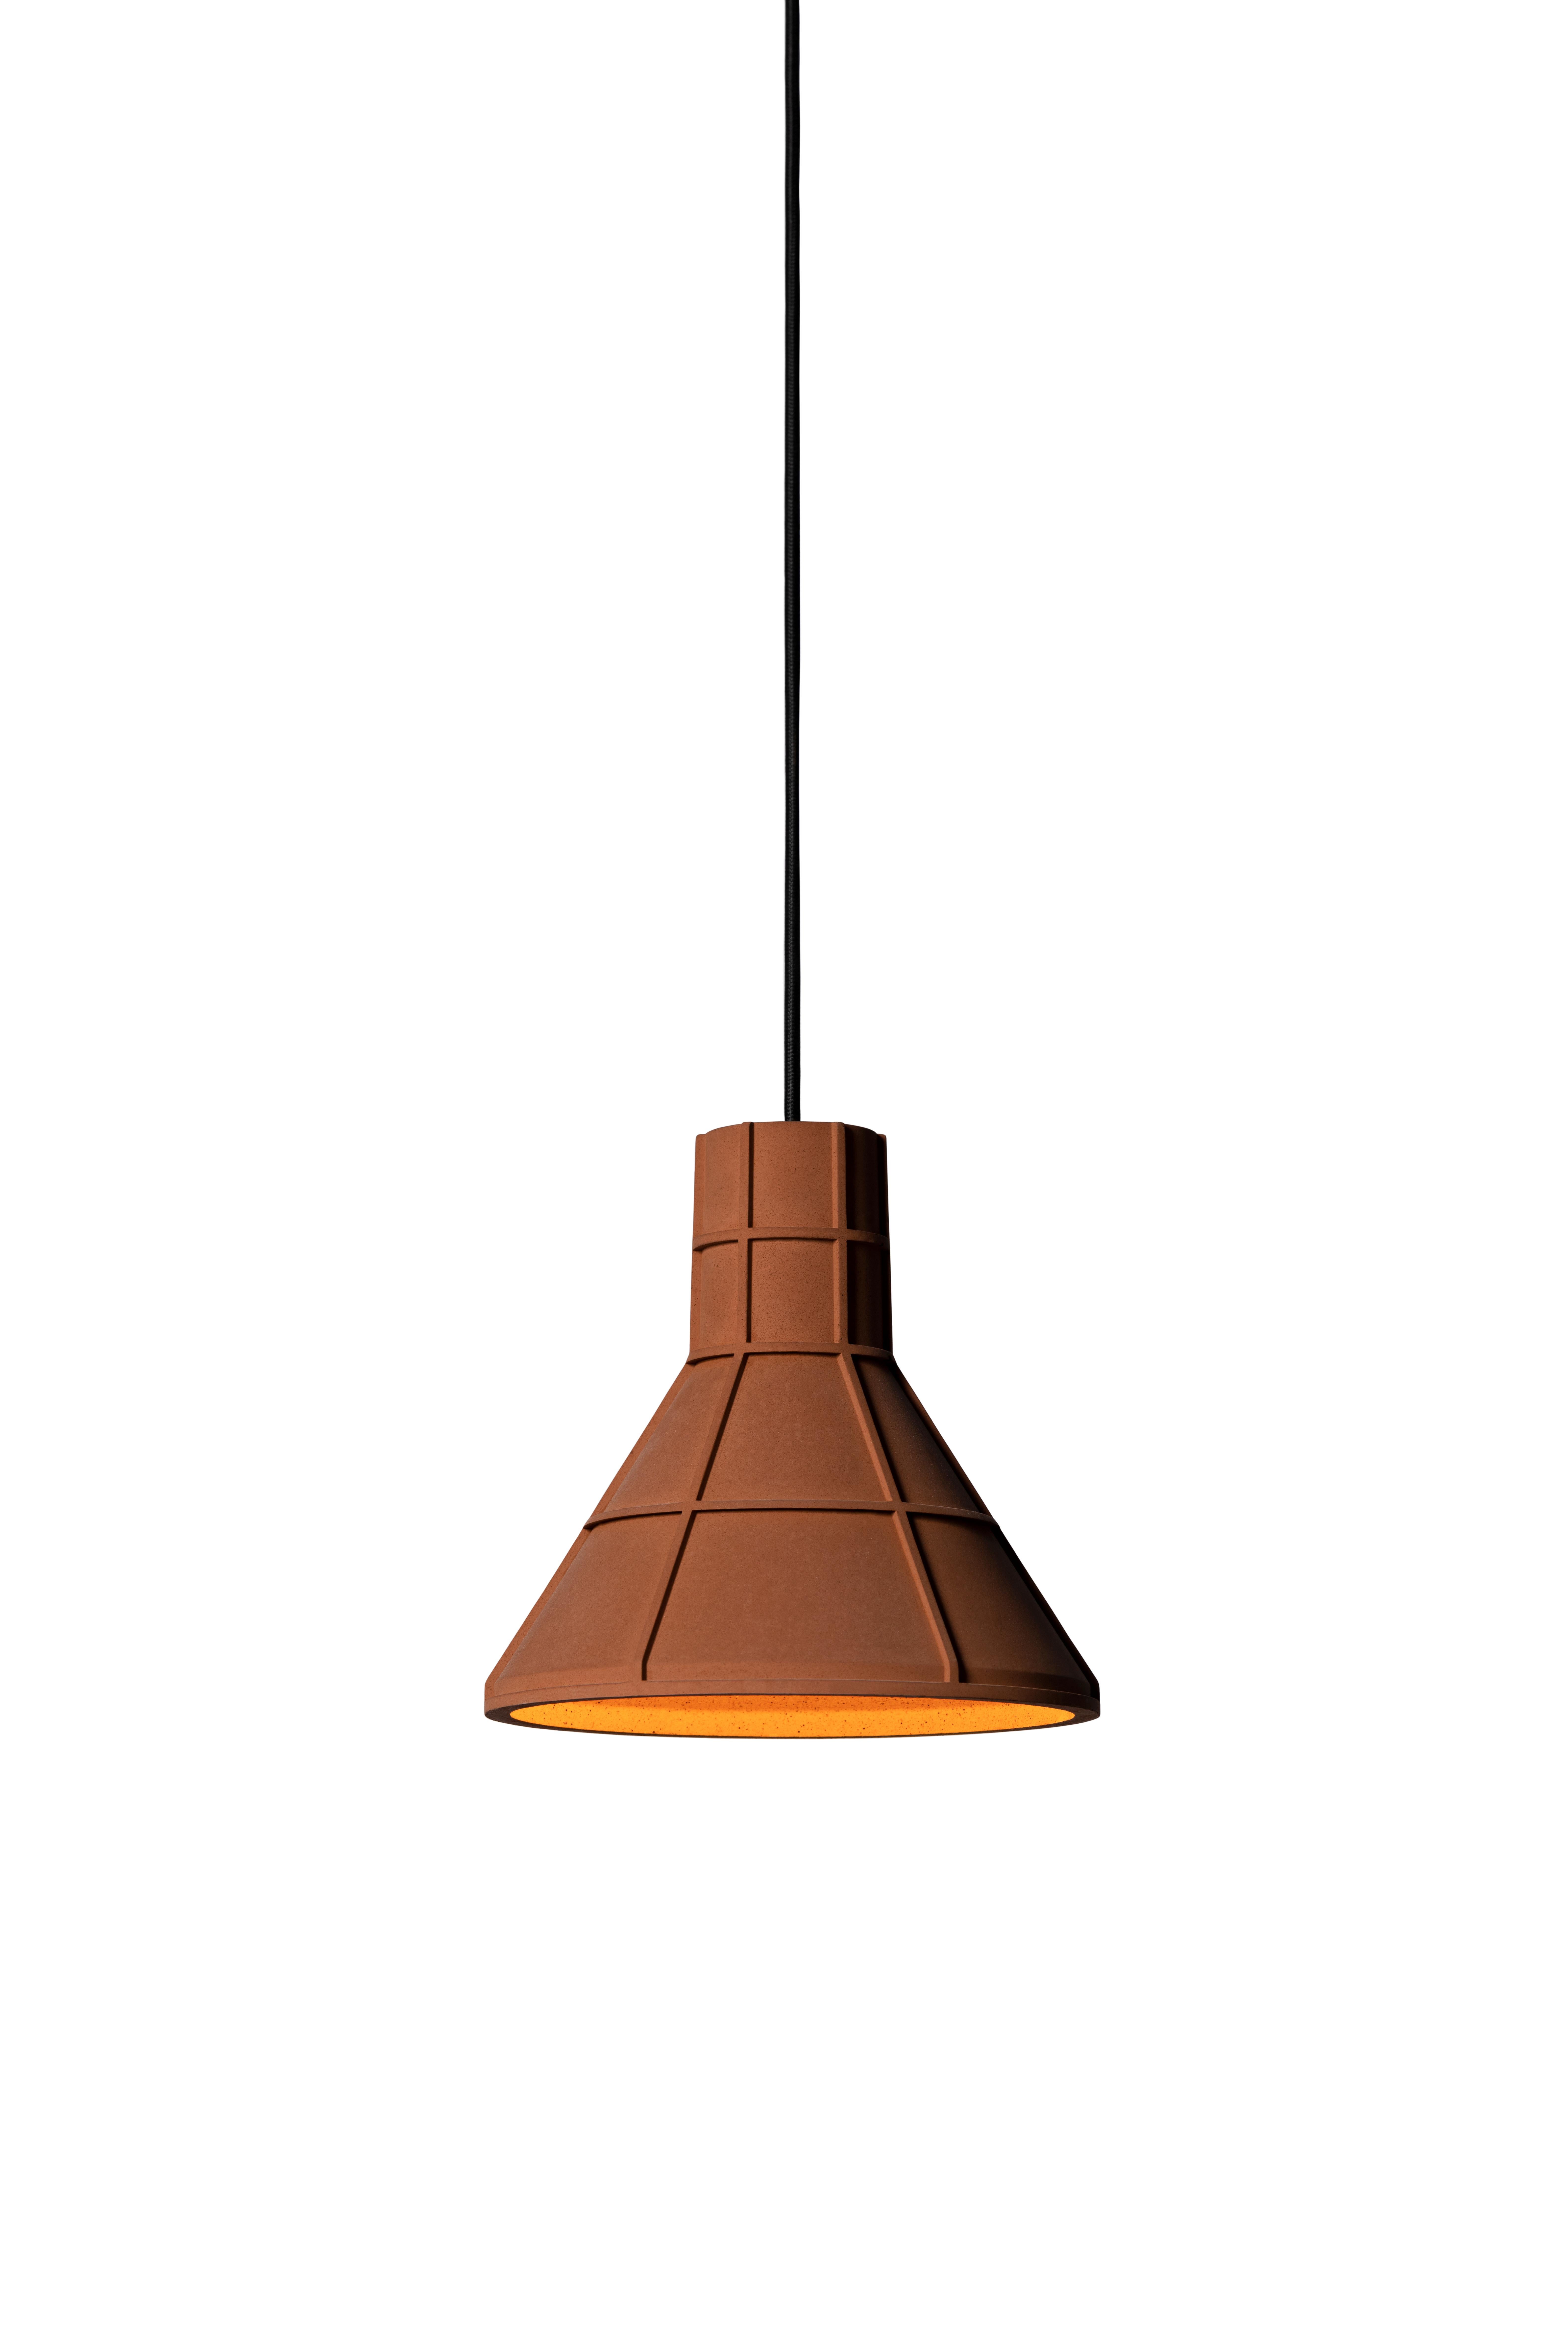 Lampe pendante 'U' de Nongzao x Bentu design.
Matériau : Terre cuite 
Couleur : brun terreux

Mesures : 21.1 cm de haut, 22,2 cm de diamètre
Fil : 3 mètres (noir)
Type de lampe : AC 100-240V 50-60Hz  9W - Comptable avec le système électrique